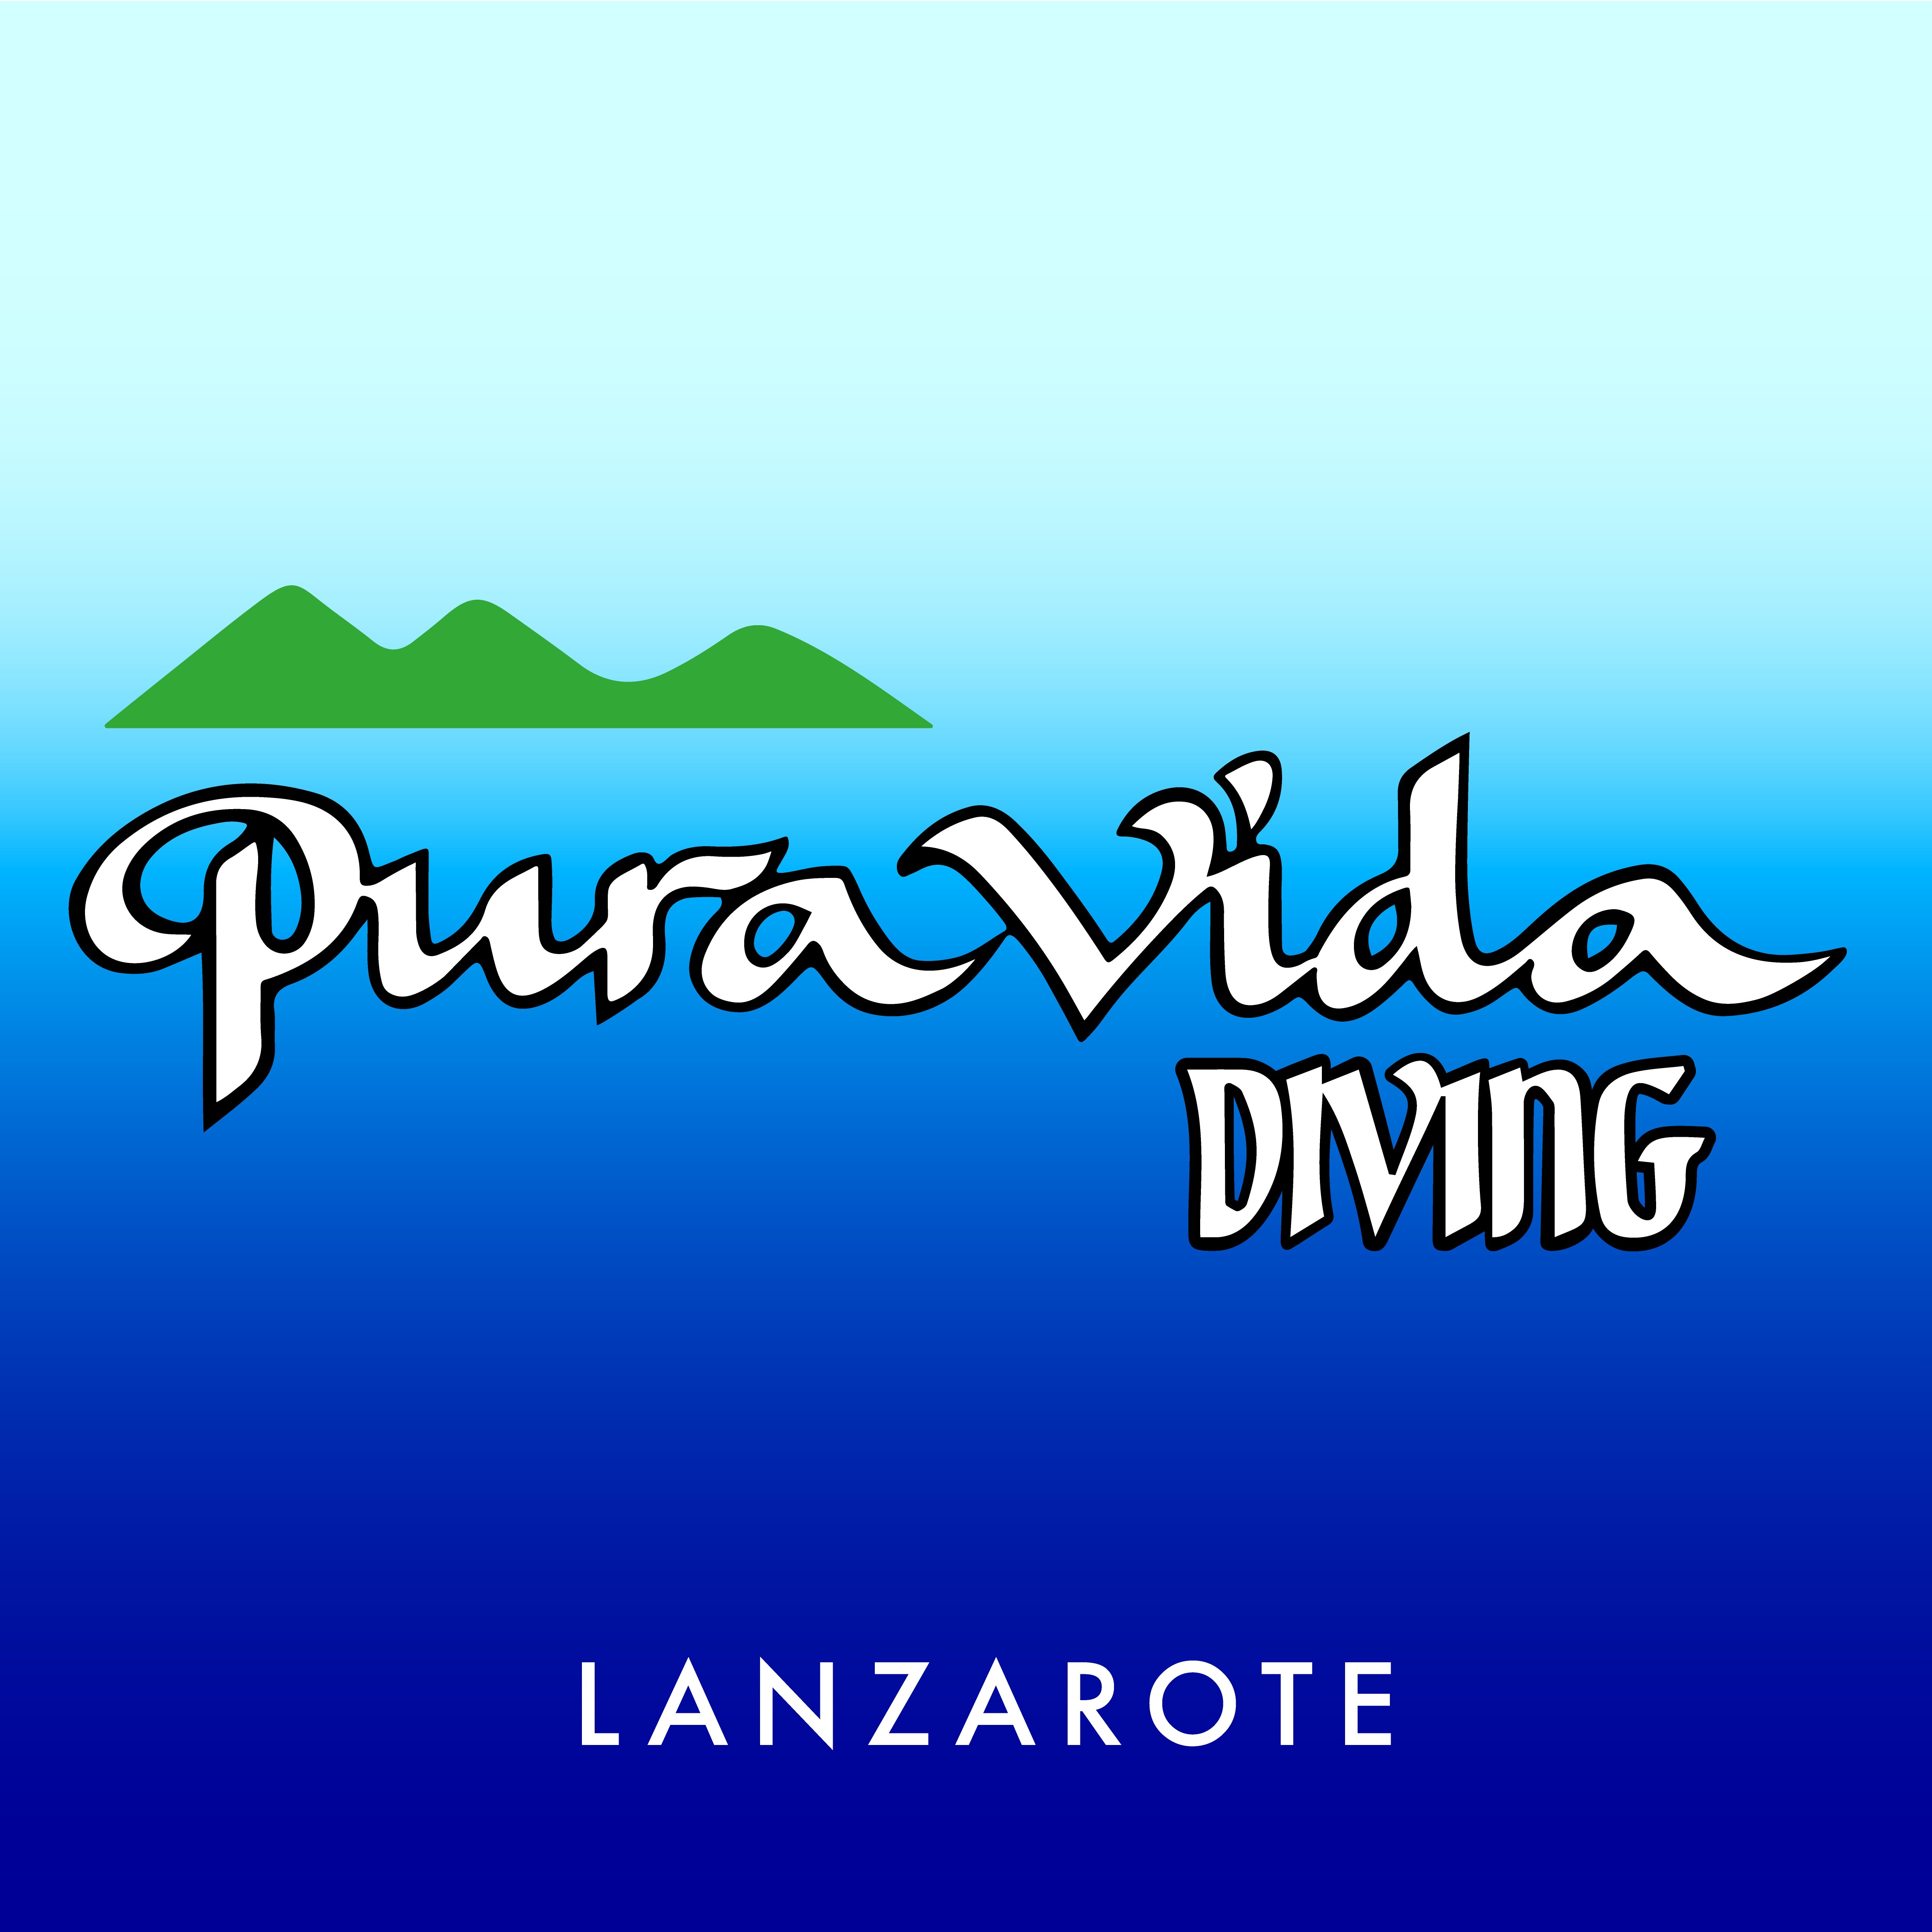 Os damos la bienvenida |  Welcome to Pura Vida Diving  Lanzarote info@puravidalanzarotediving.com